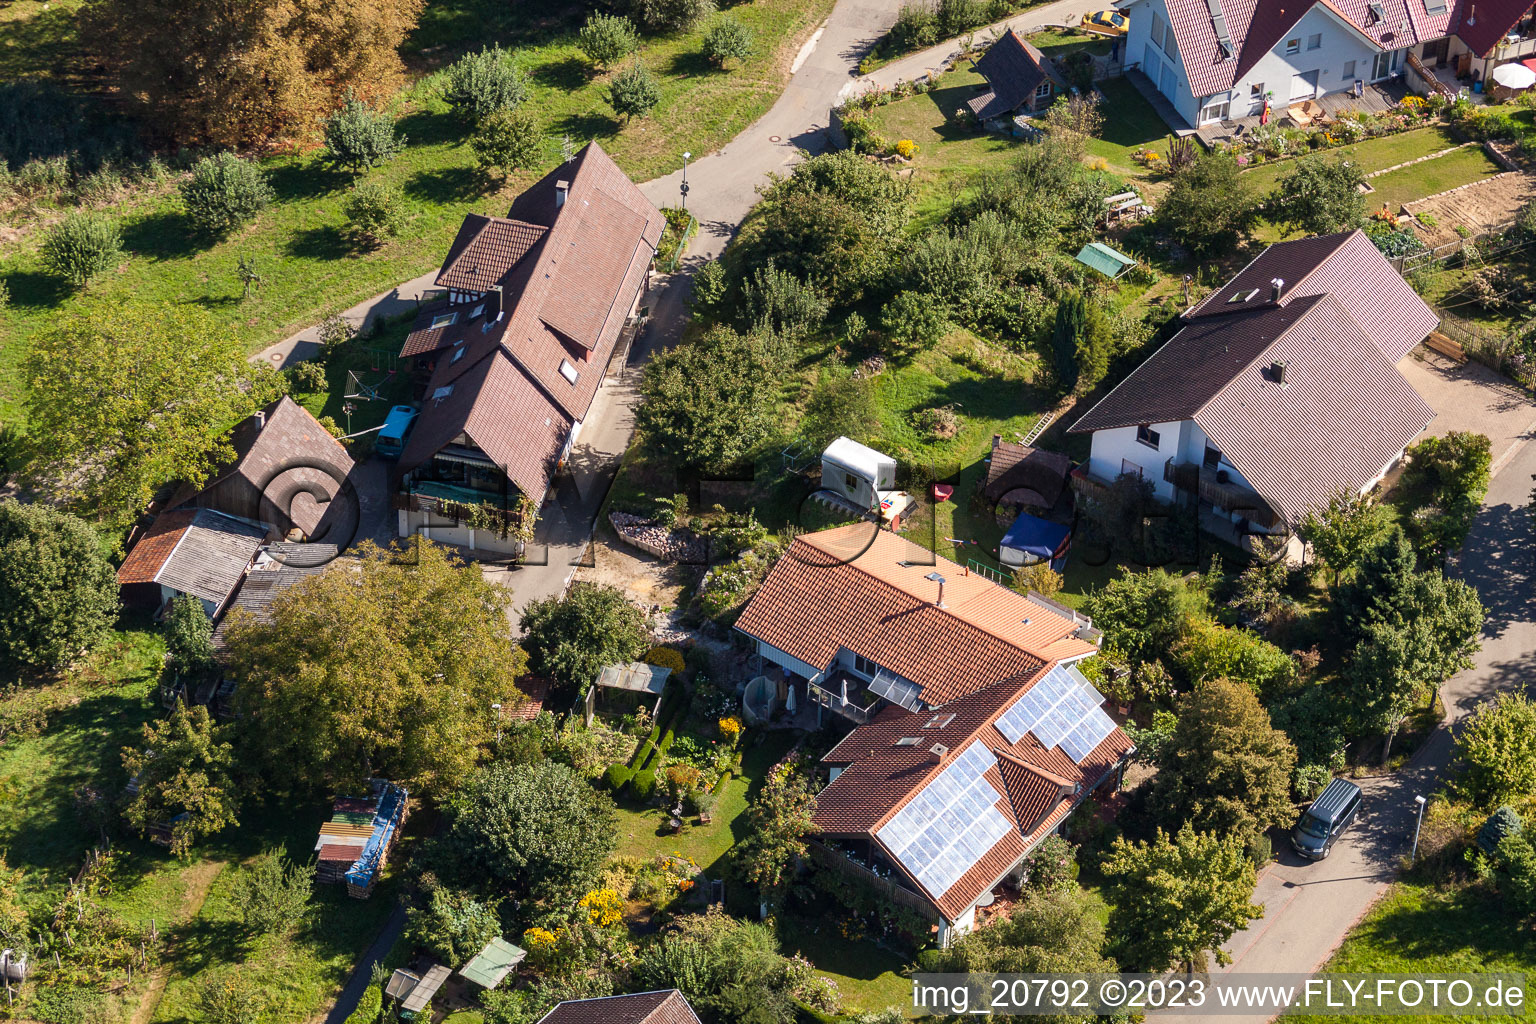 Ortsteil Fessenbach in Offenburg im Bundesland Baden-Württemberg, Deutschland aus der Luft betrachtet